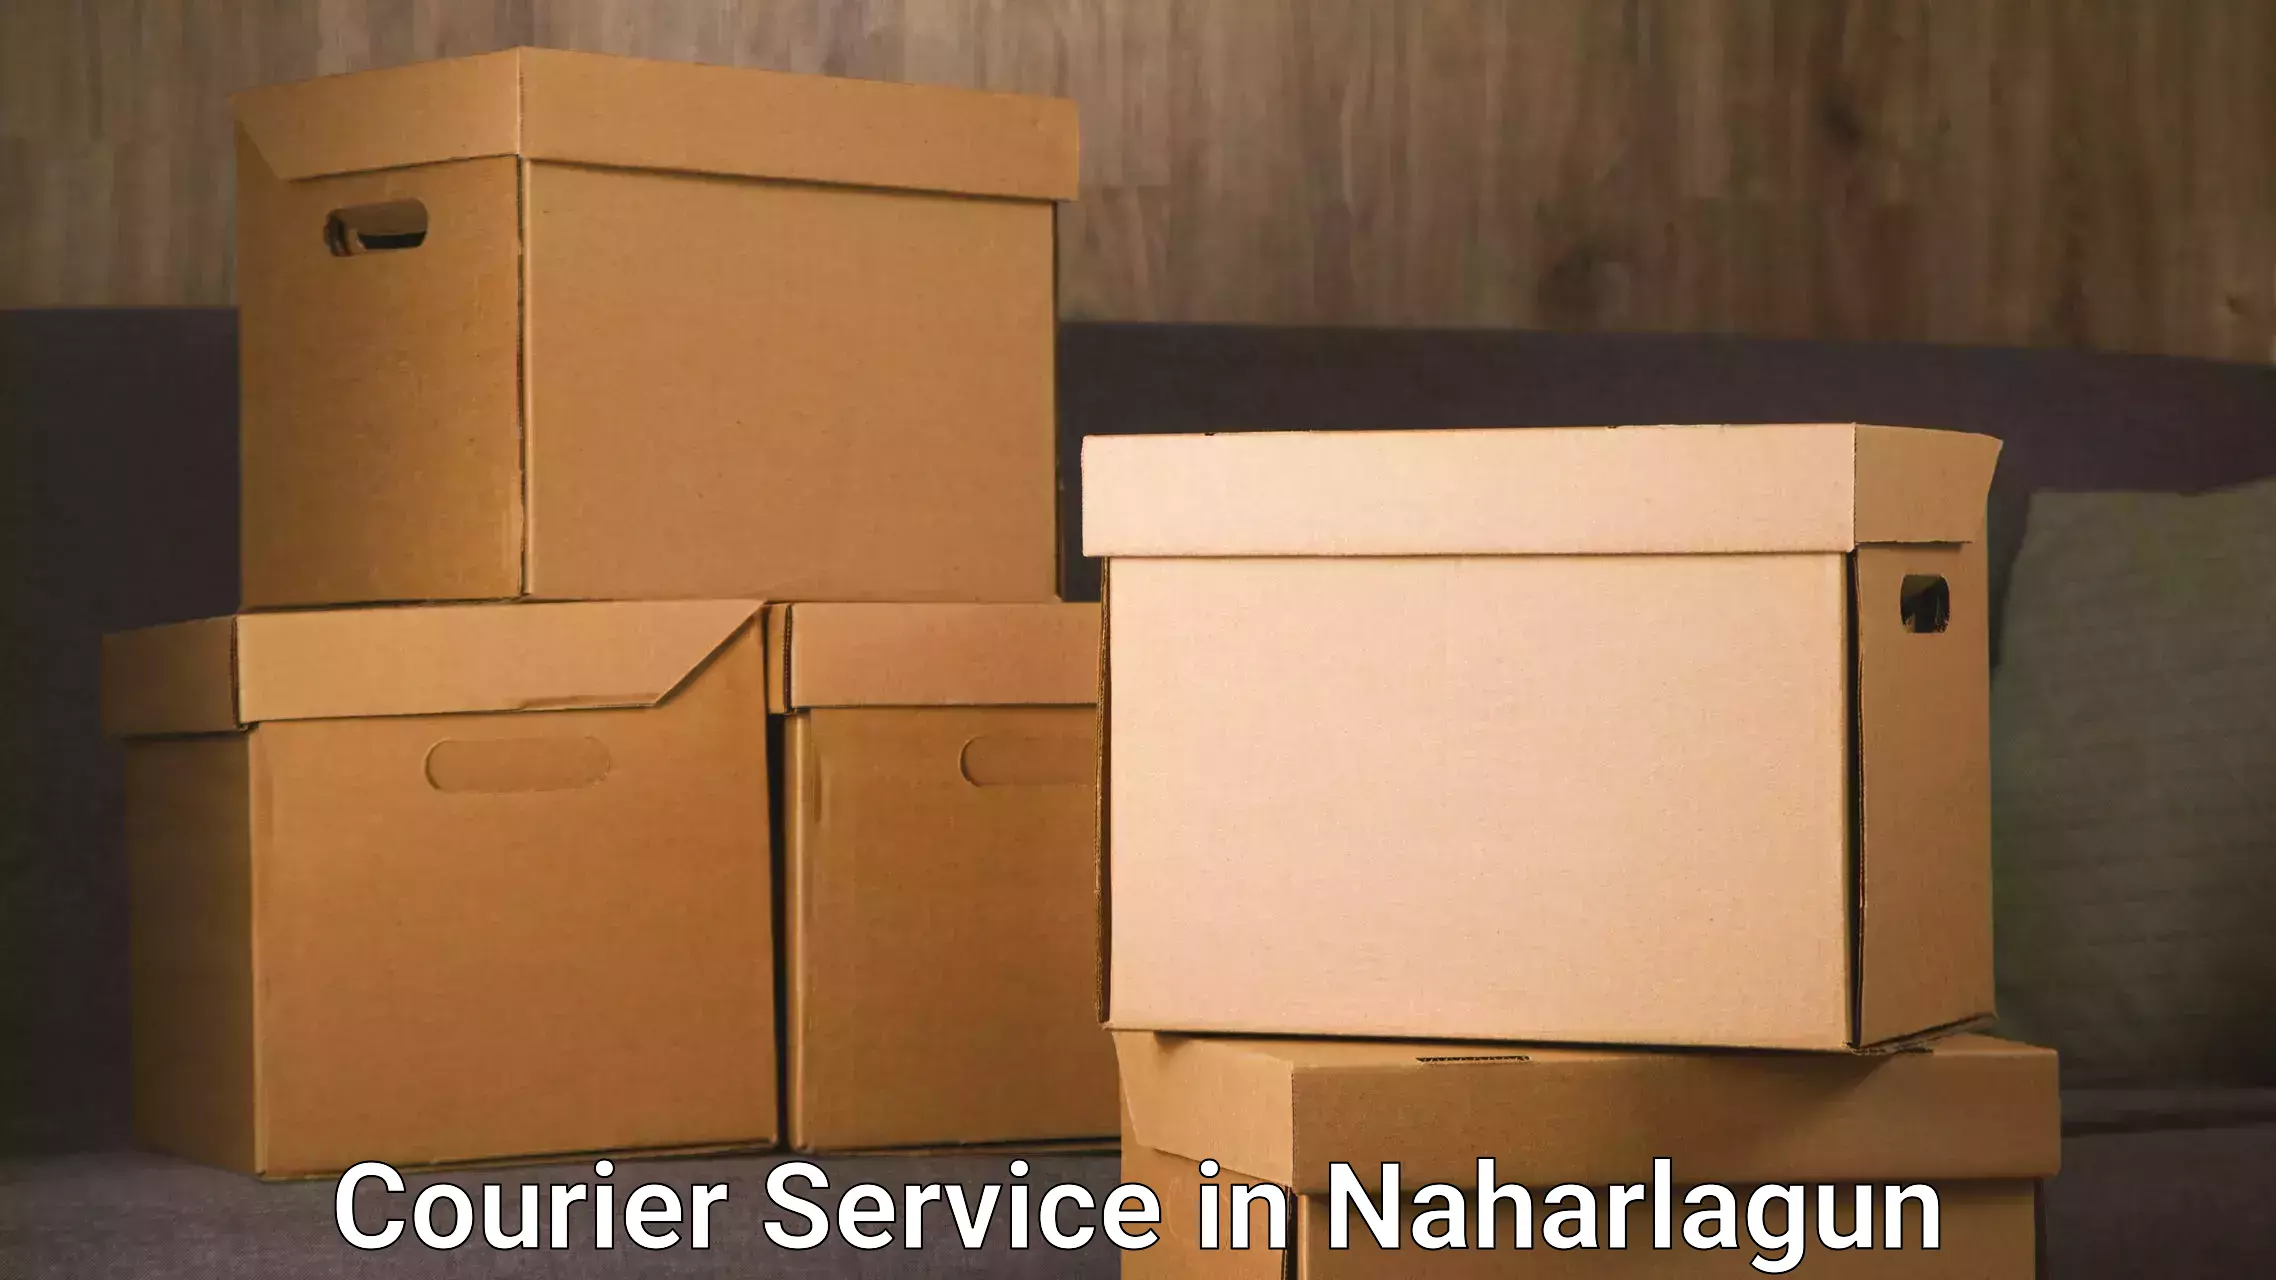 Logistics management in Naharlagun